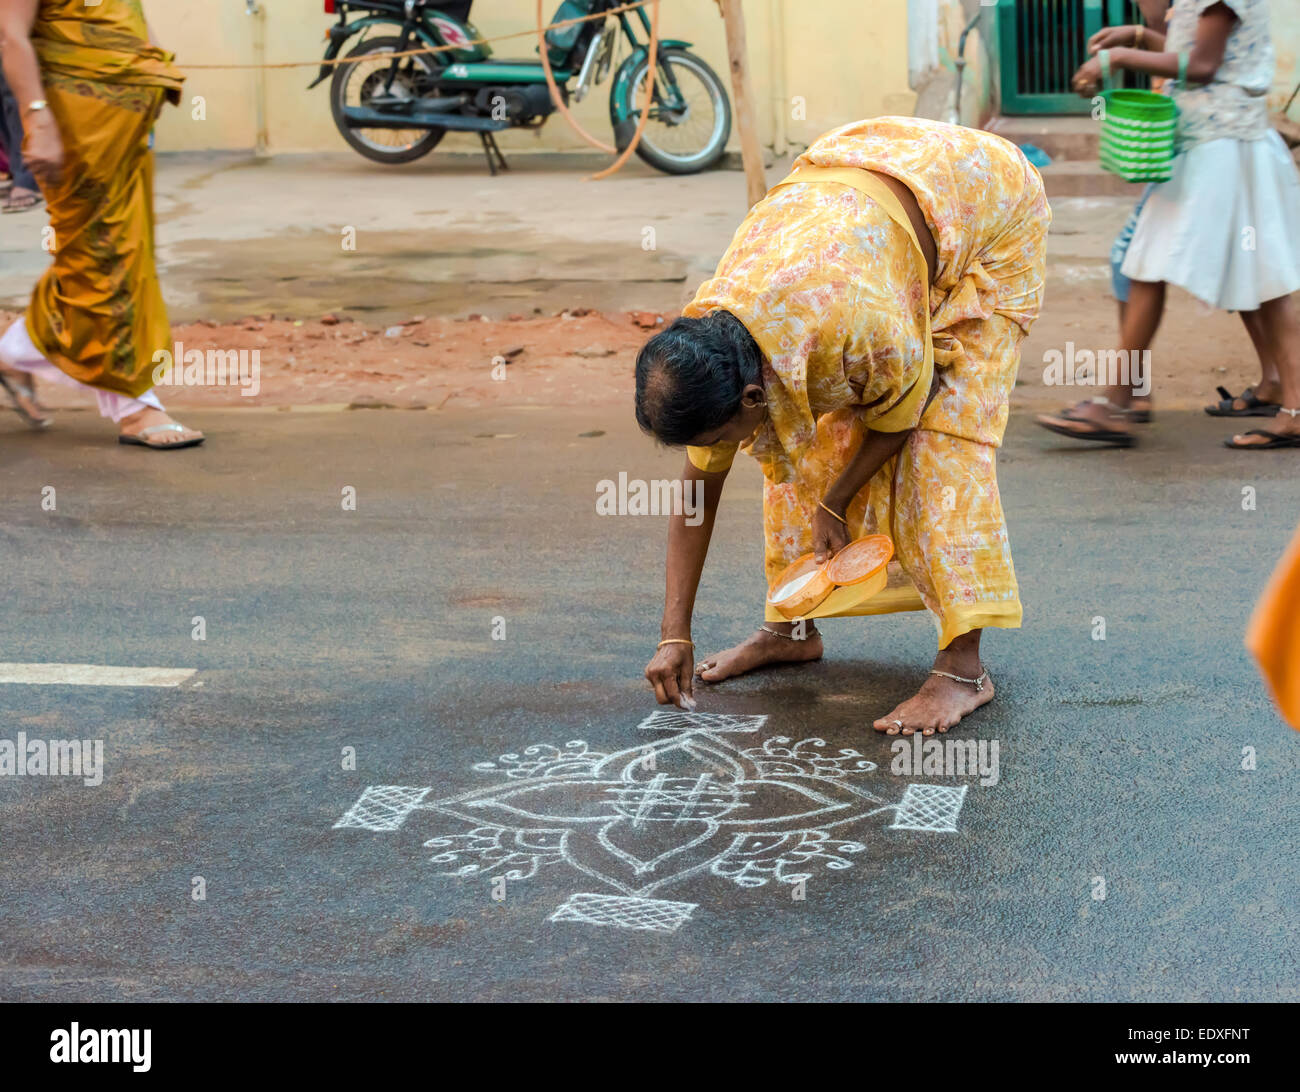 THANJAVOUR, India - 14 febbraio: una donna non identificato pitture ornamenti di farina di riso sulla strada asfaltata. India, nello Stato del Tamil Nadu, Thanj Foto Stock